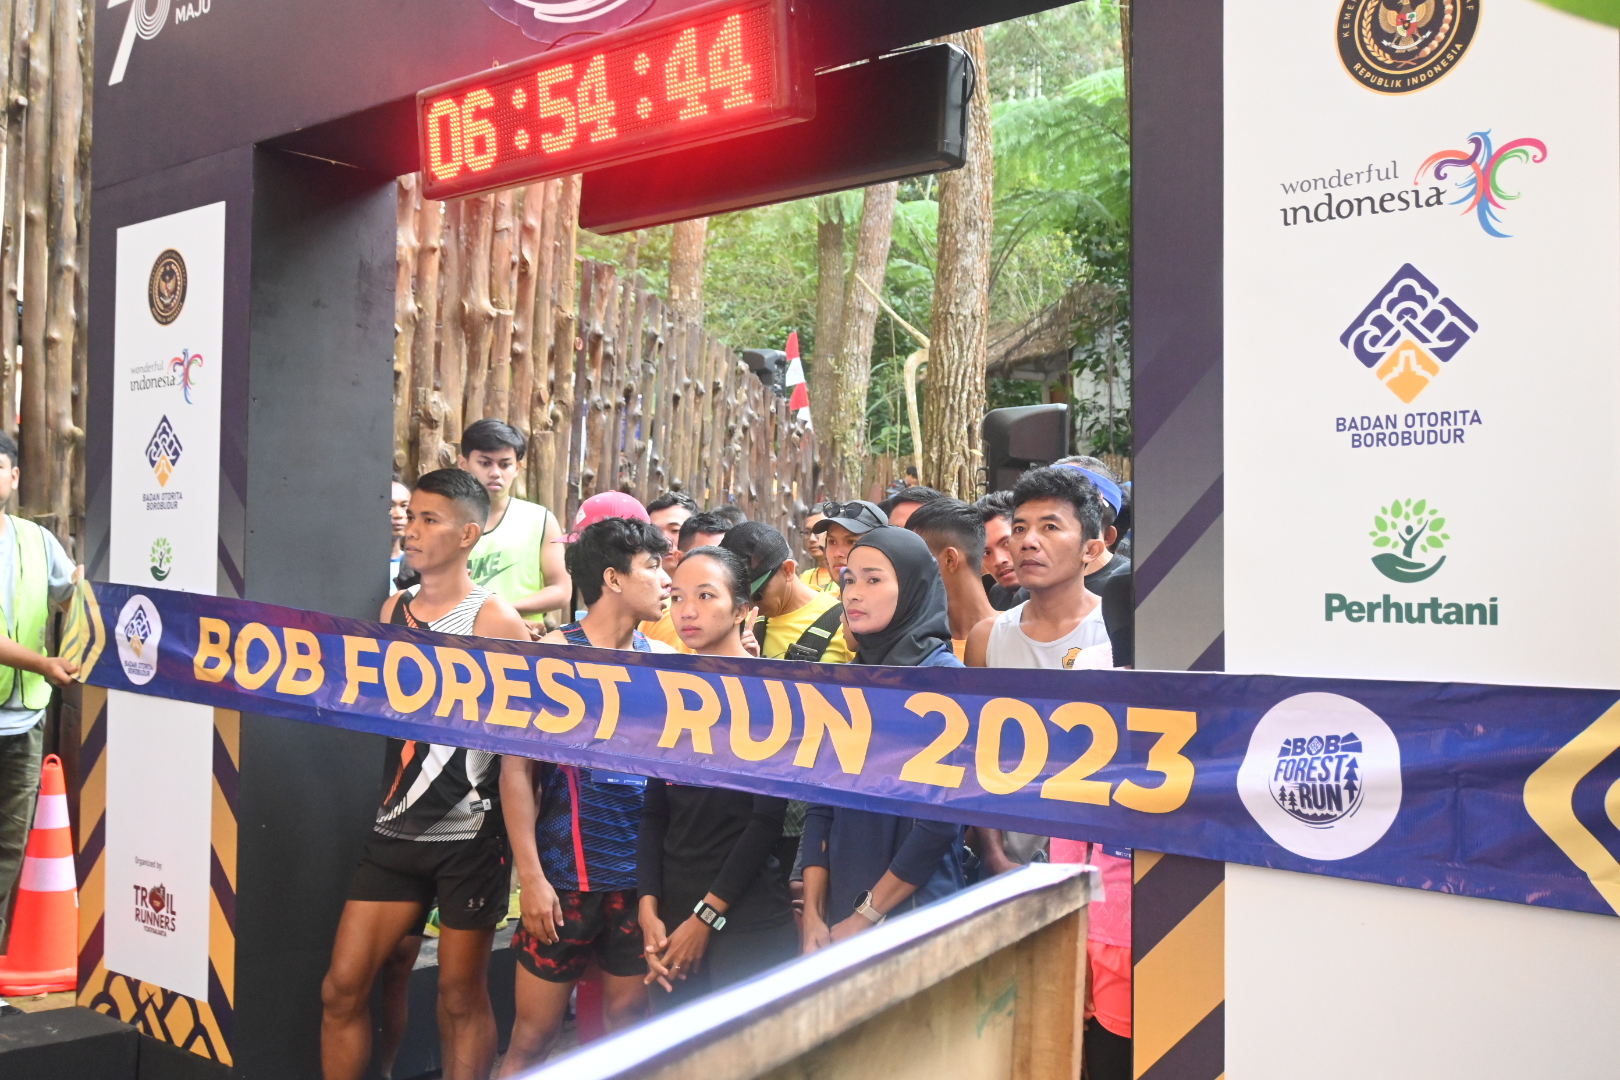 bob forest run 2023